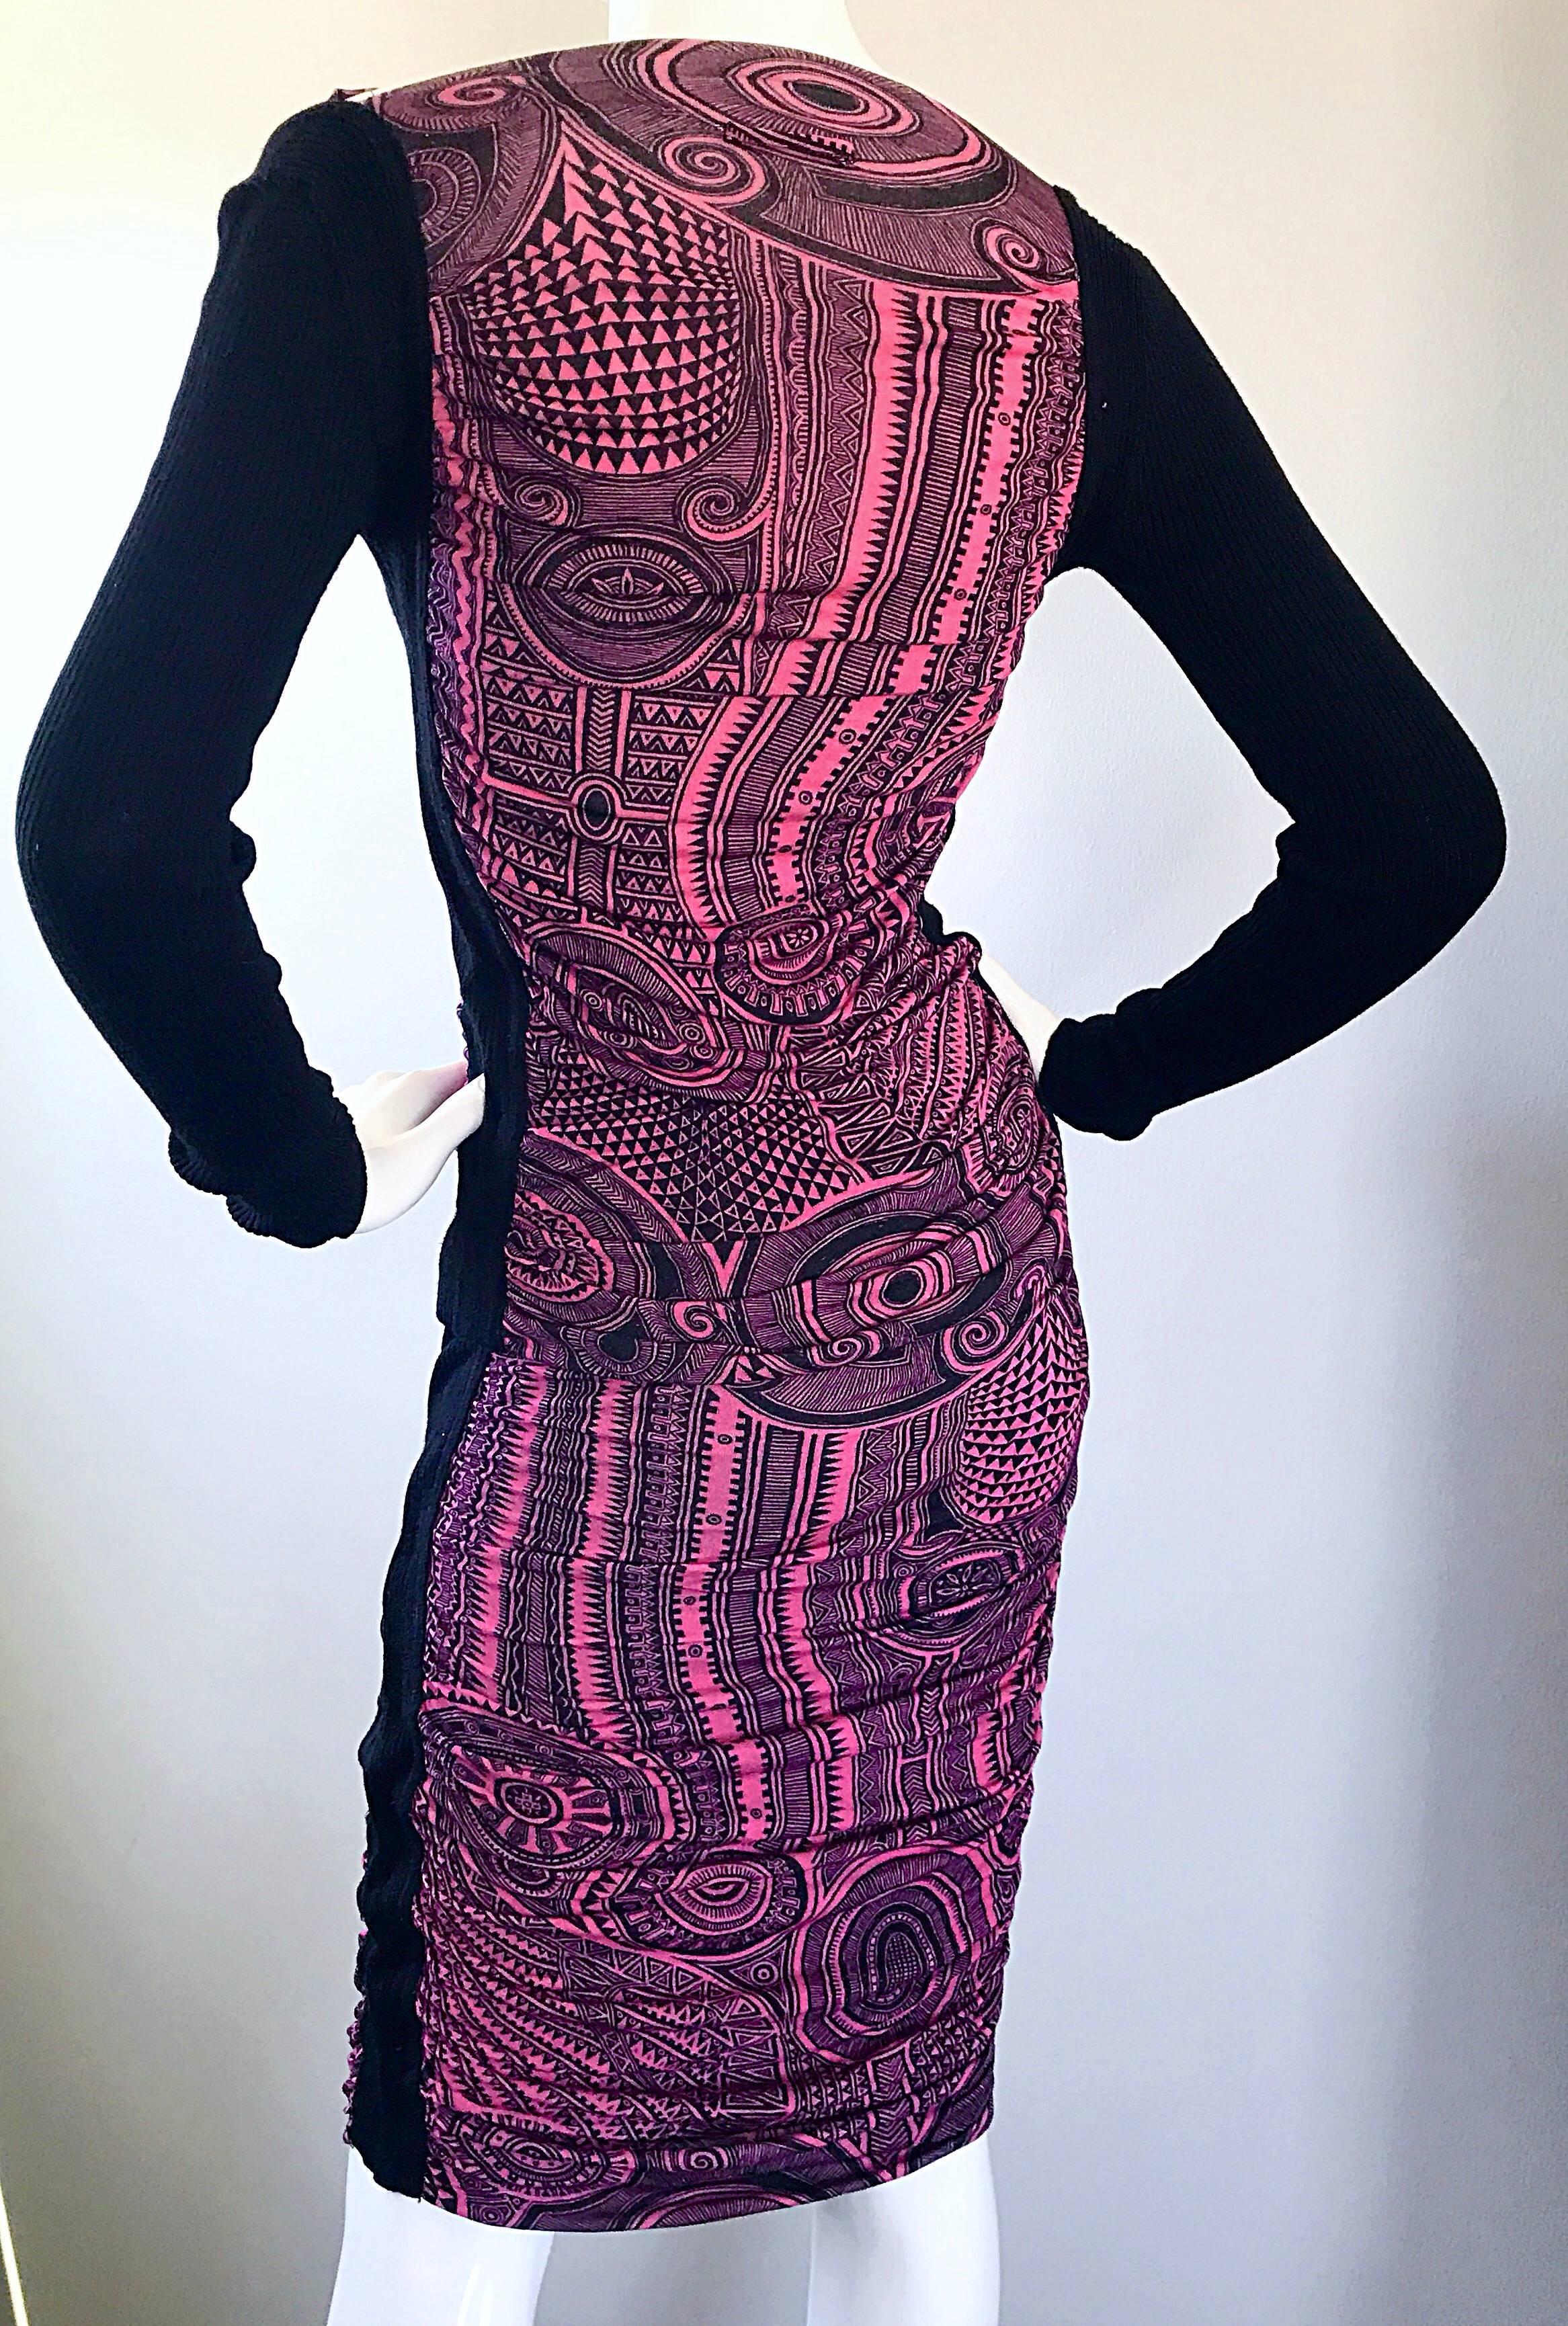 Purple Jean Paul Gaultier Vintage 1990s Pink + Black Aztec Top & Skirt Dress Ensemble For Sale